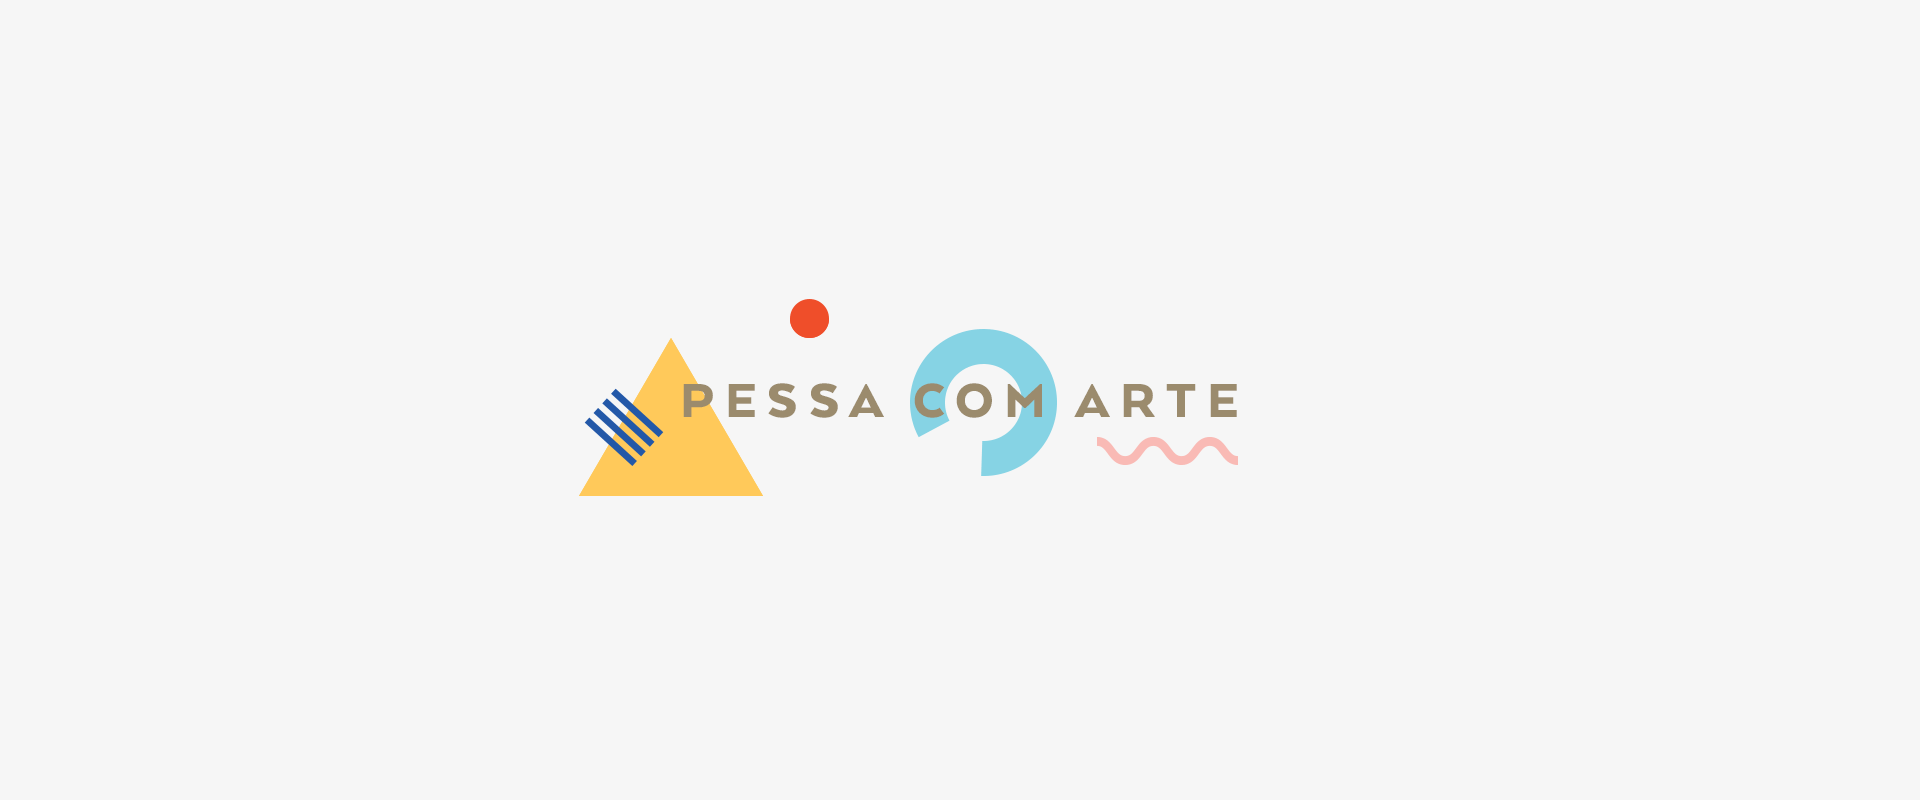 PESSA -Fullscreen 2.3 - LOBA.cx